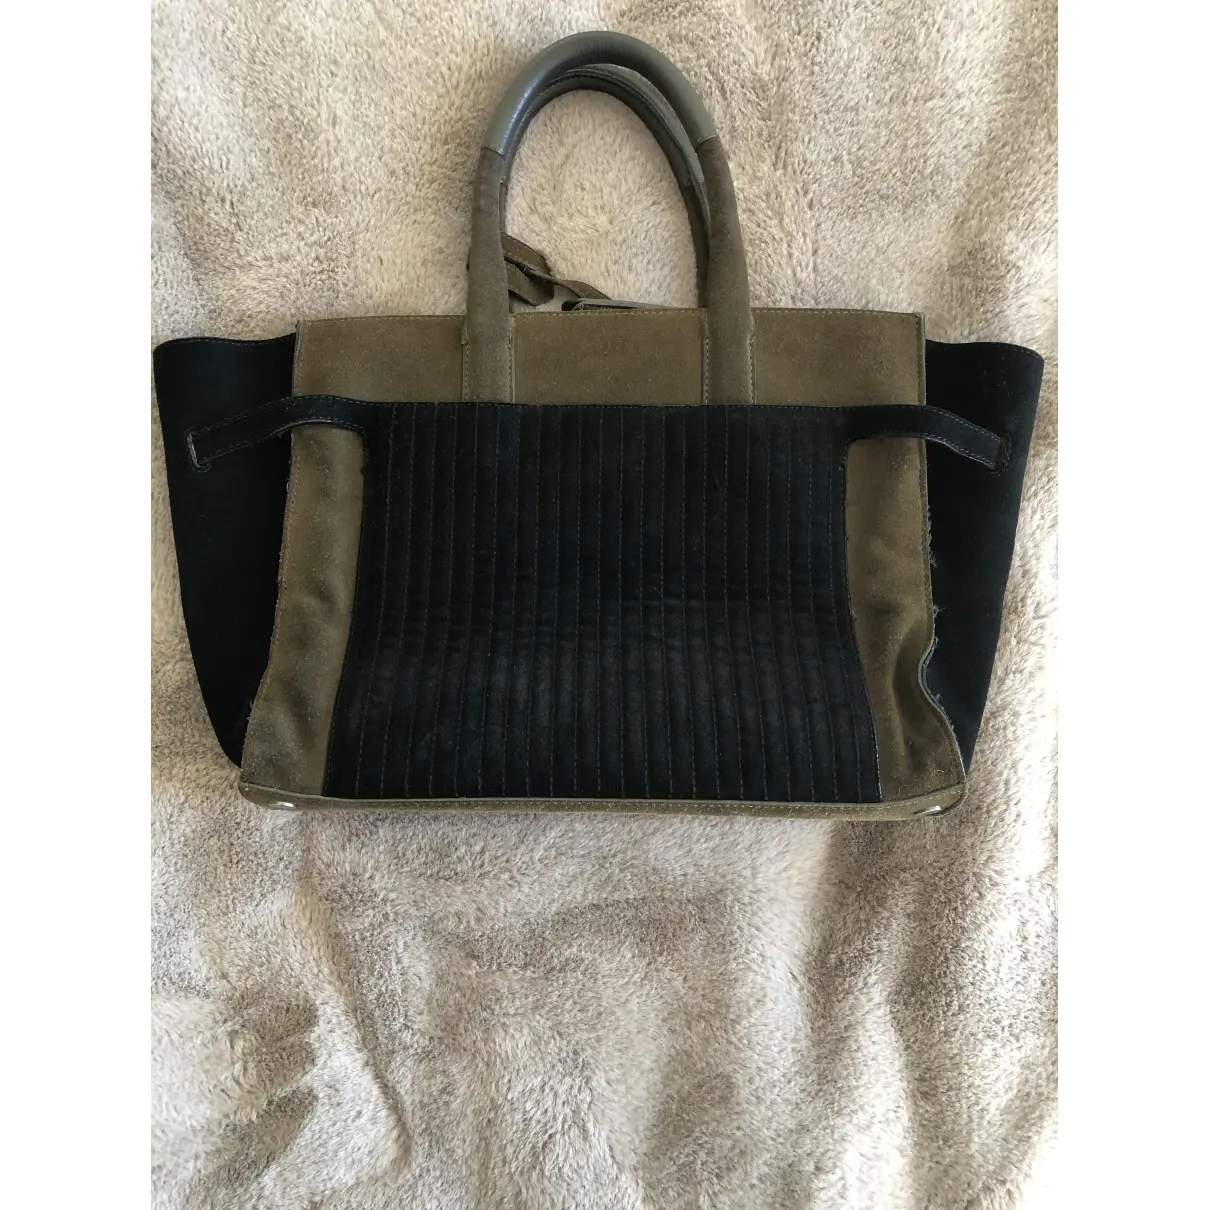 Buy Zadig & Voltaire Leather handbag online